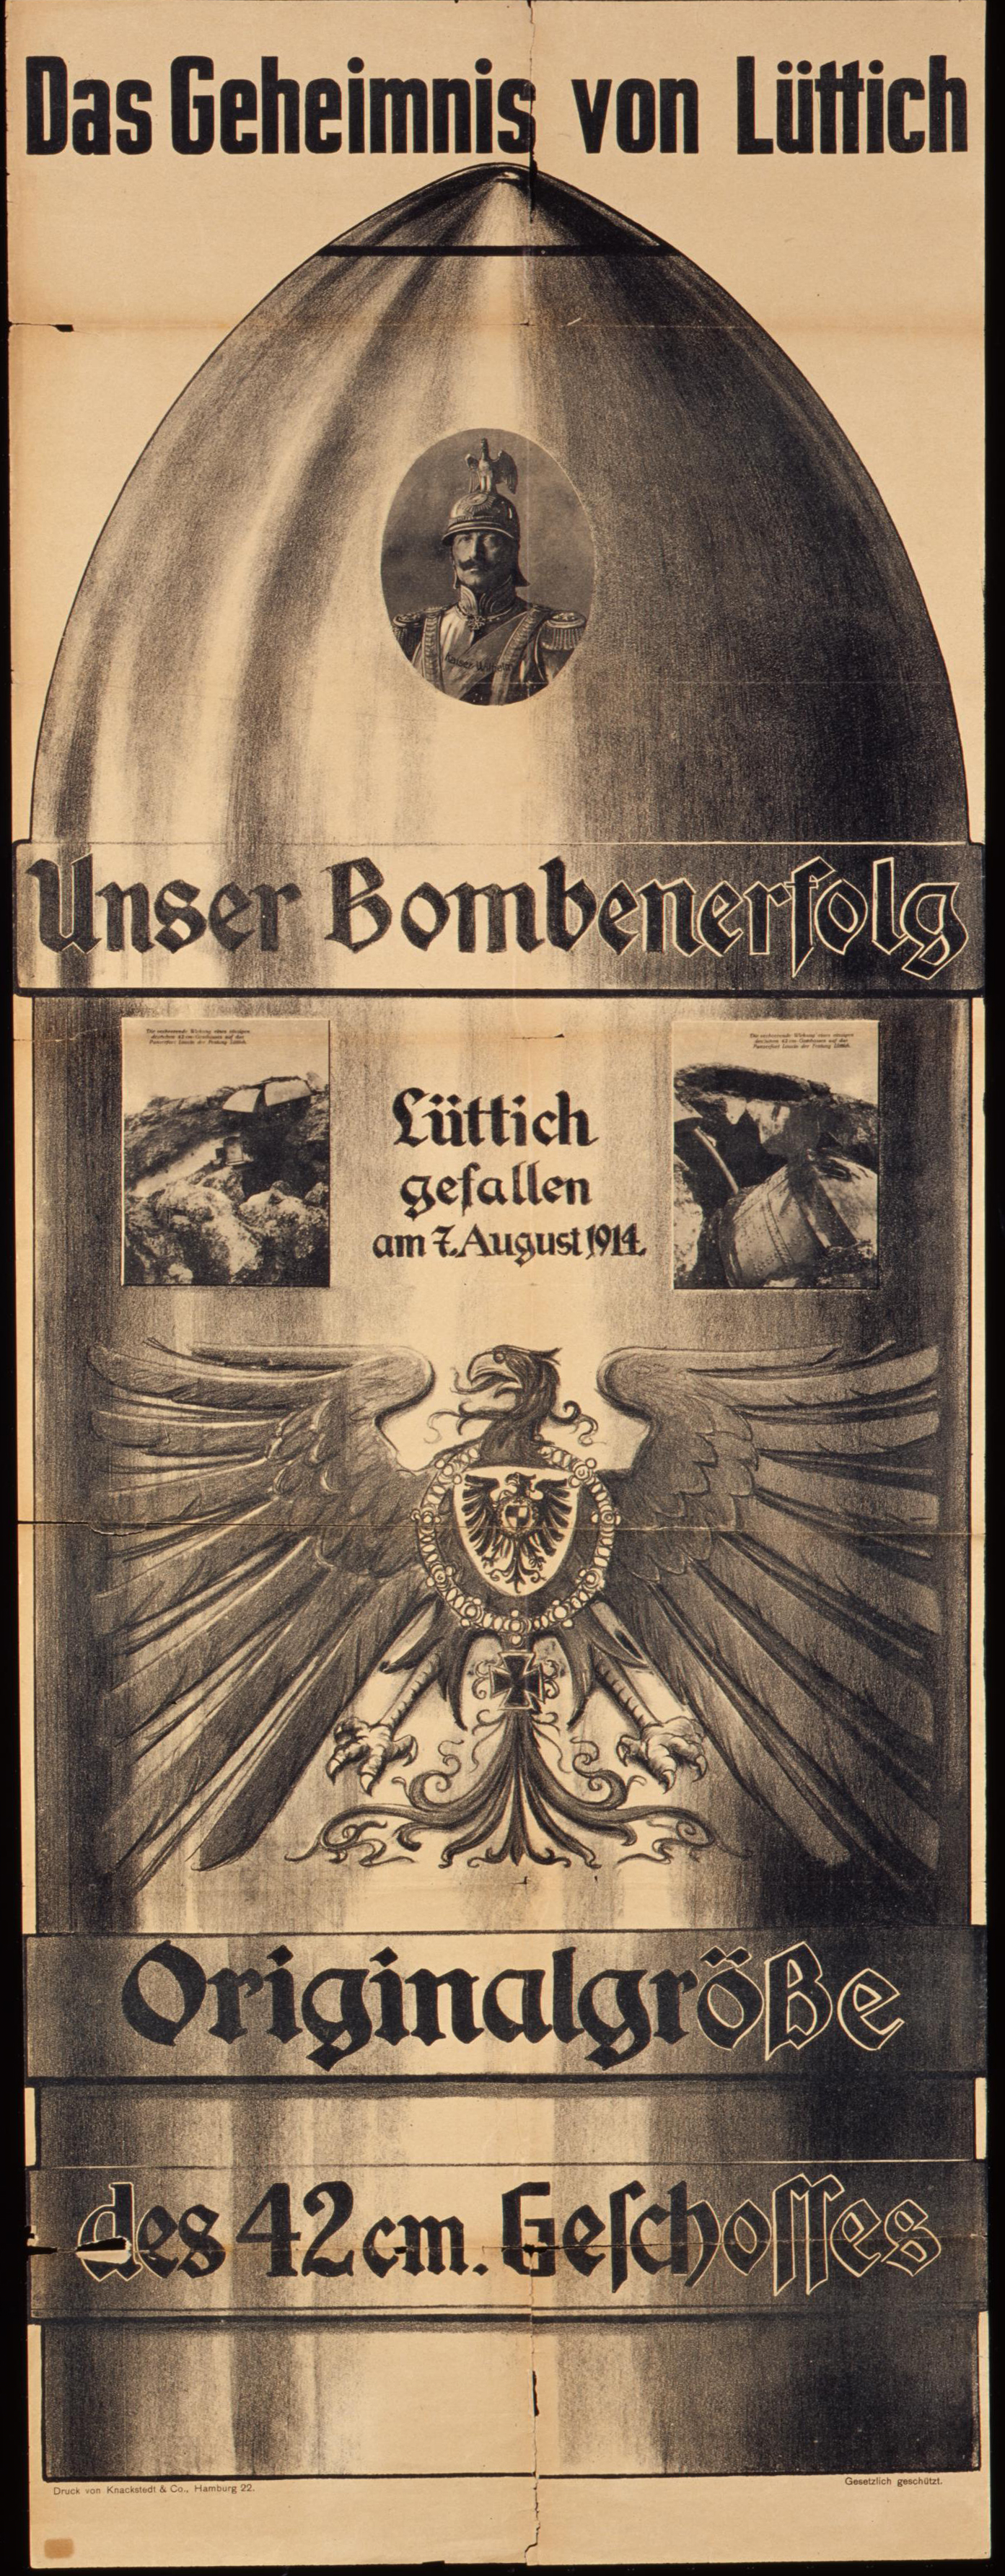 Exponat: Plakat: Propagandaplakat "Das Geheimnis von Lüttich", 1914/1918